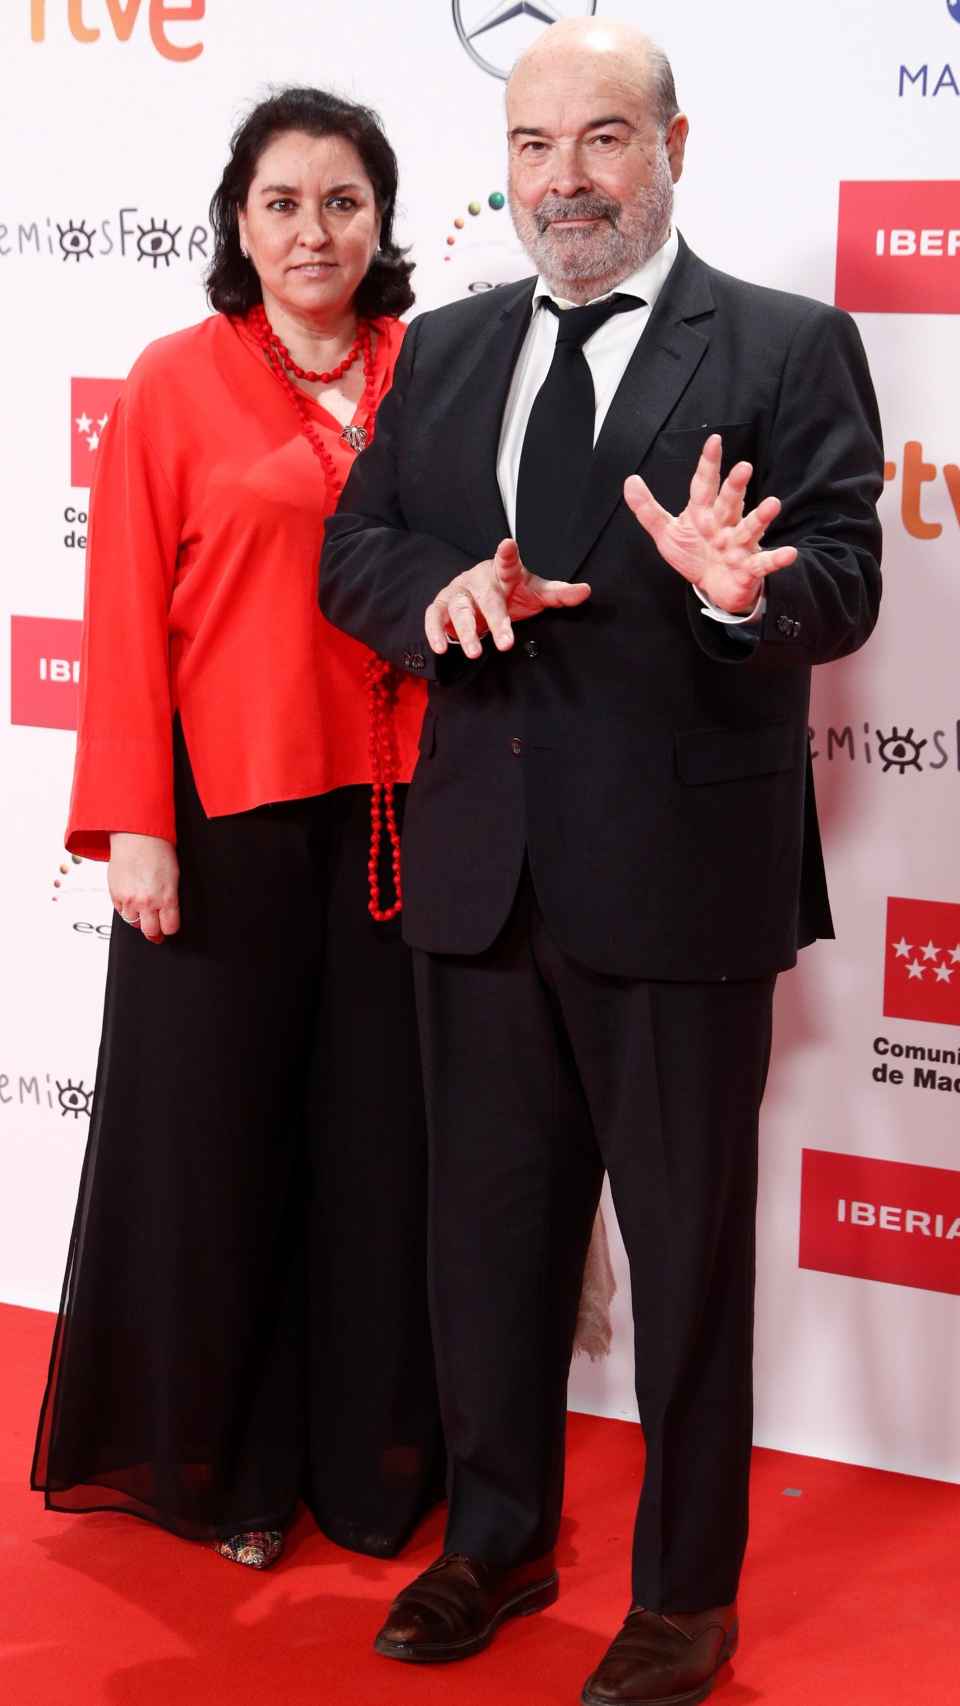 El director de cine Antonio Resines y su mujer, Pérez-Lorente, en un acto público en diciembre de 2021.